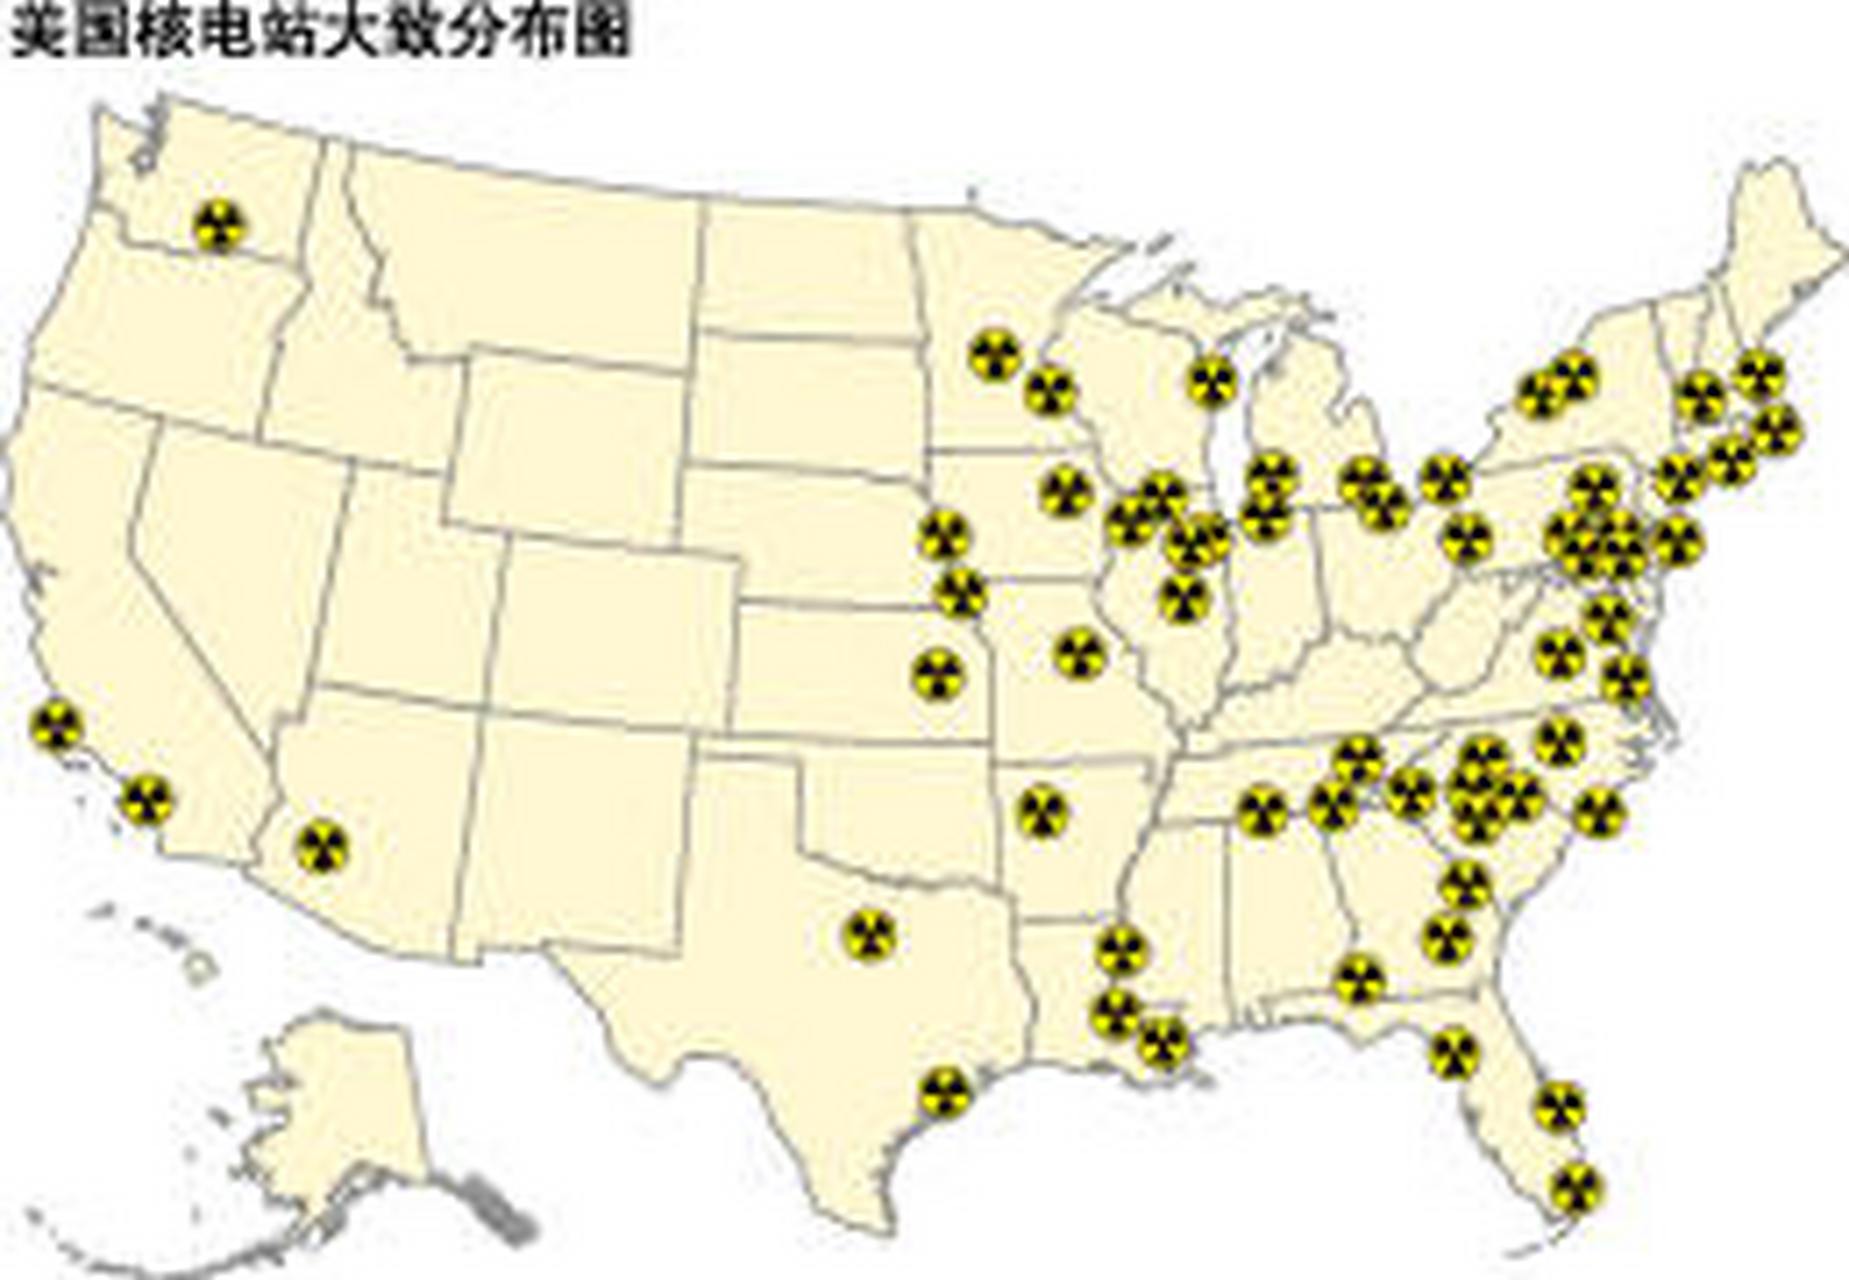 而日本,我们的核电站是建在沿海地区!